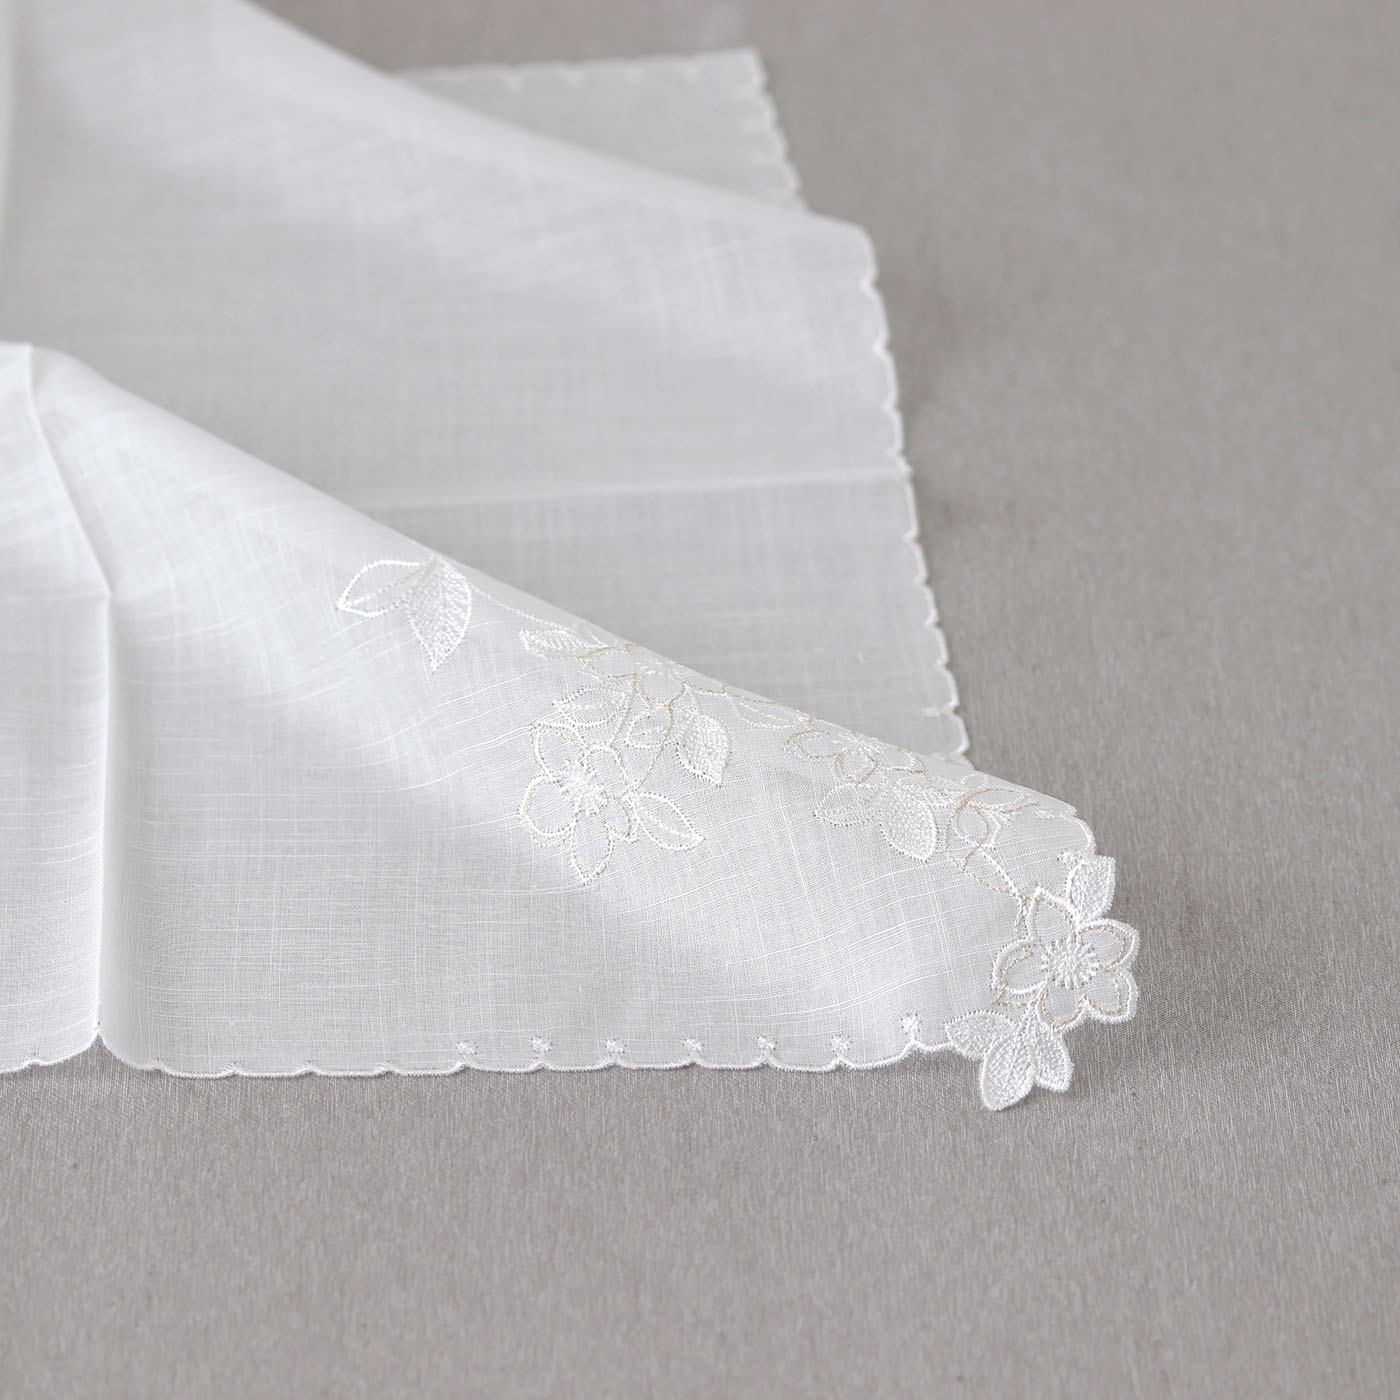 Karen [Bridal handkerchief].